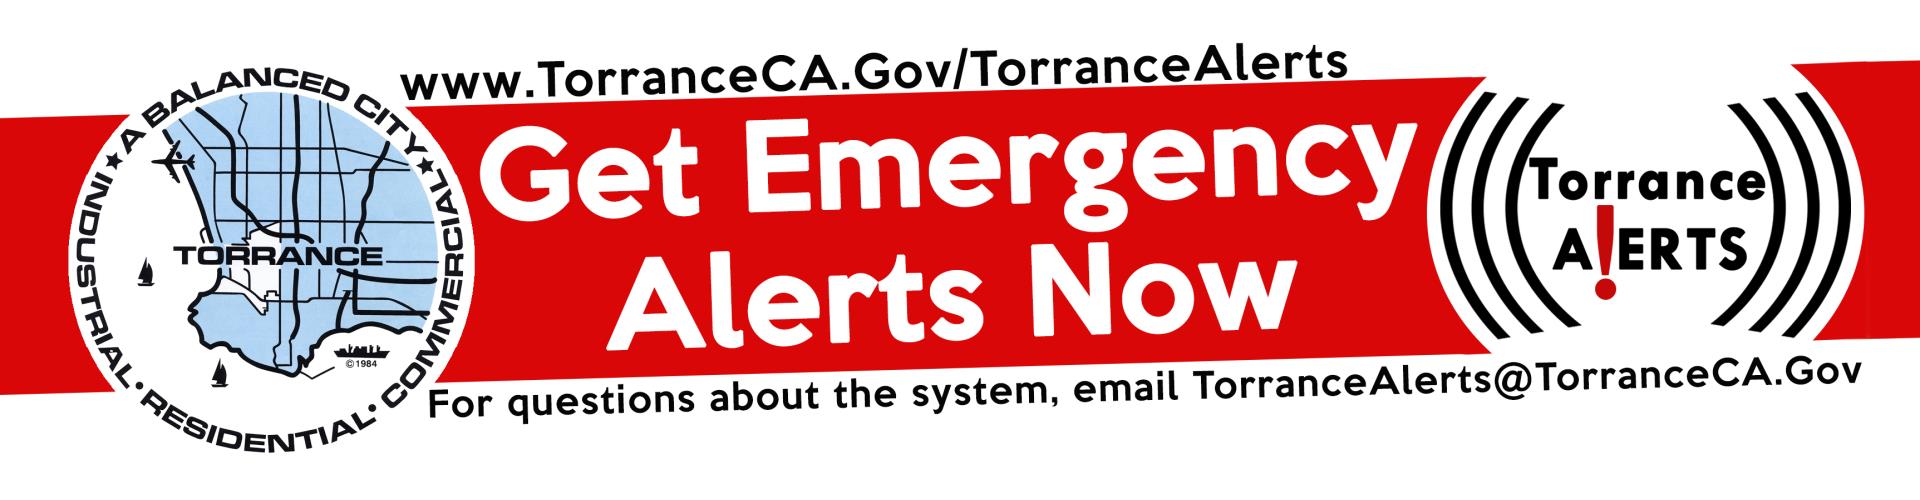 Torrance Emergency Alerts banner